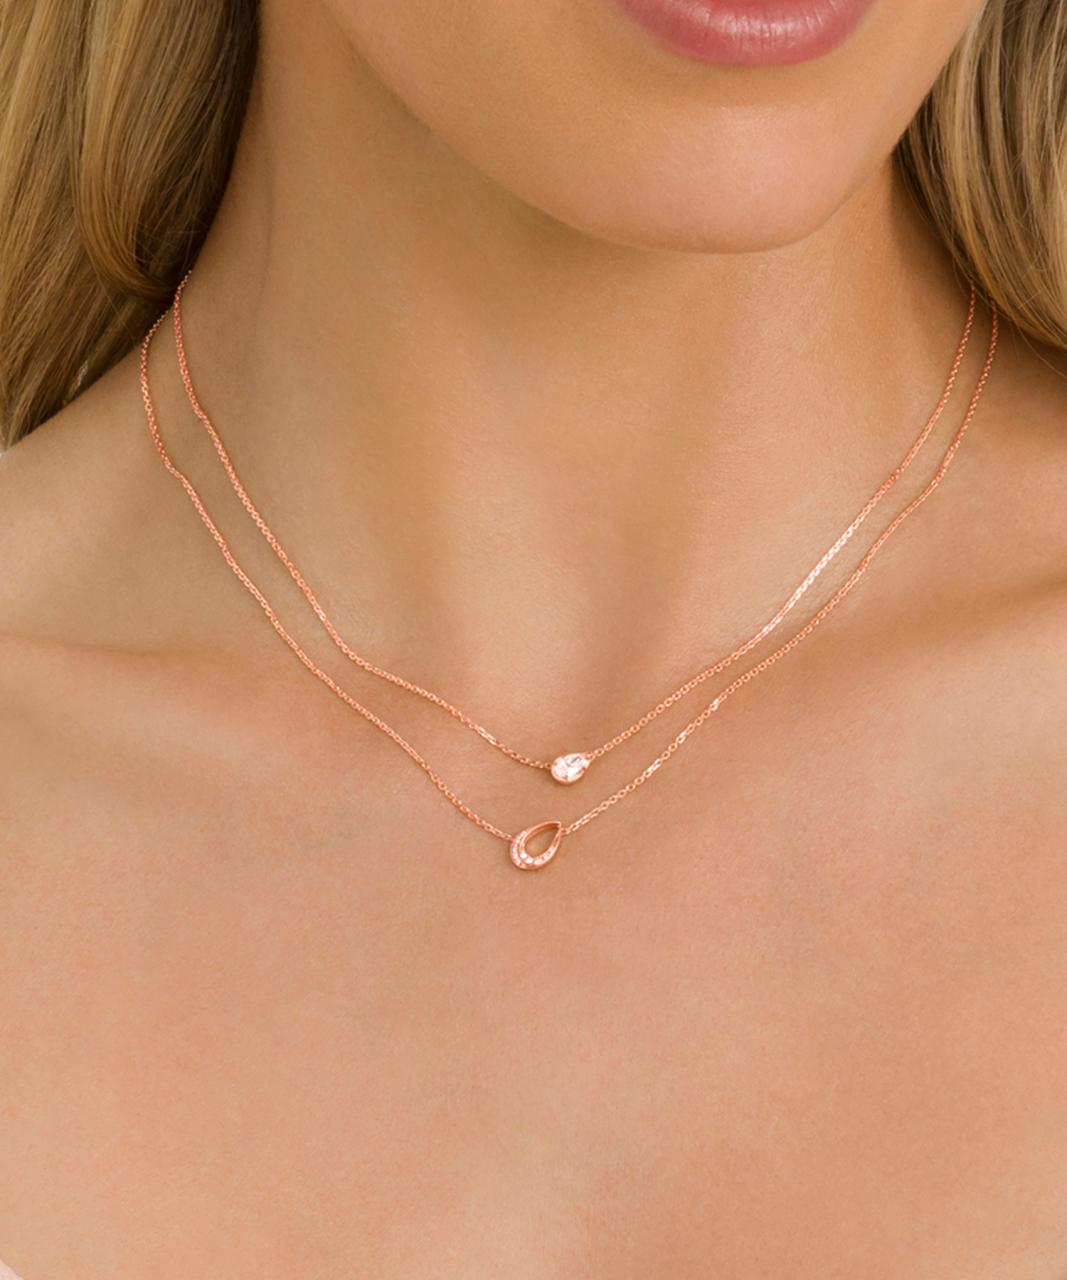 Pera Diamond Necklace